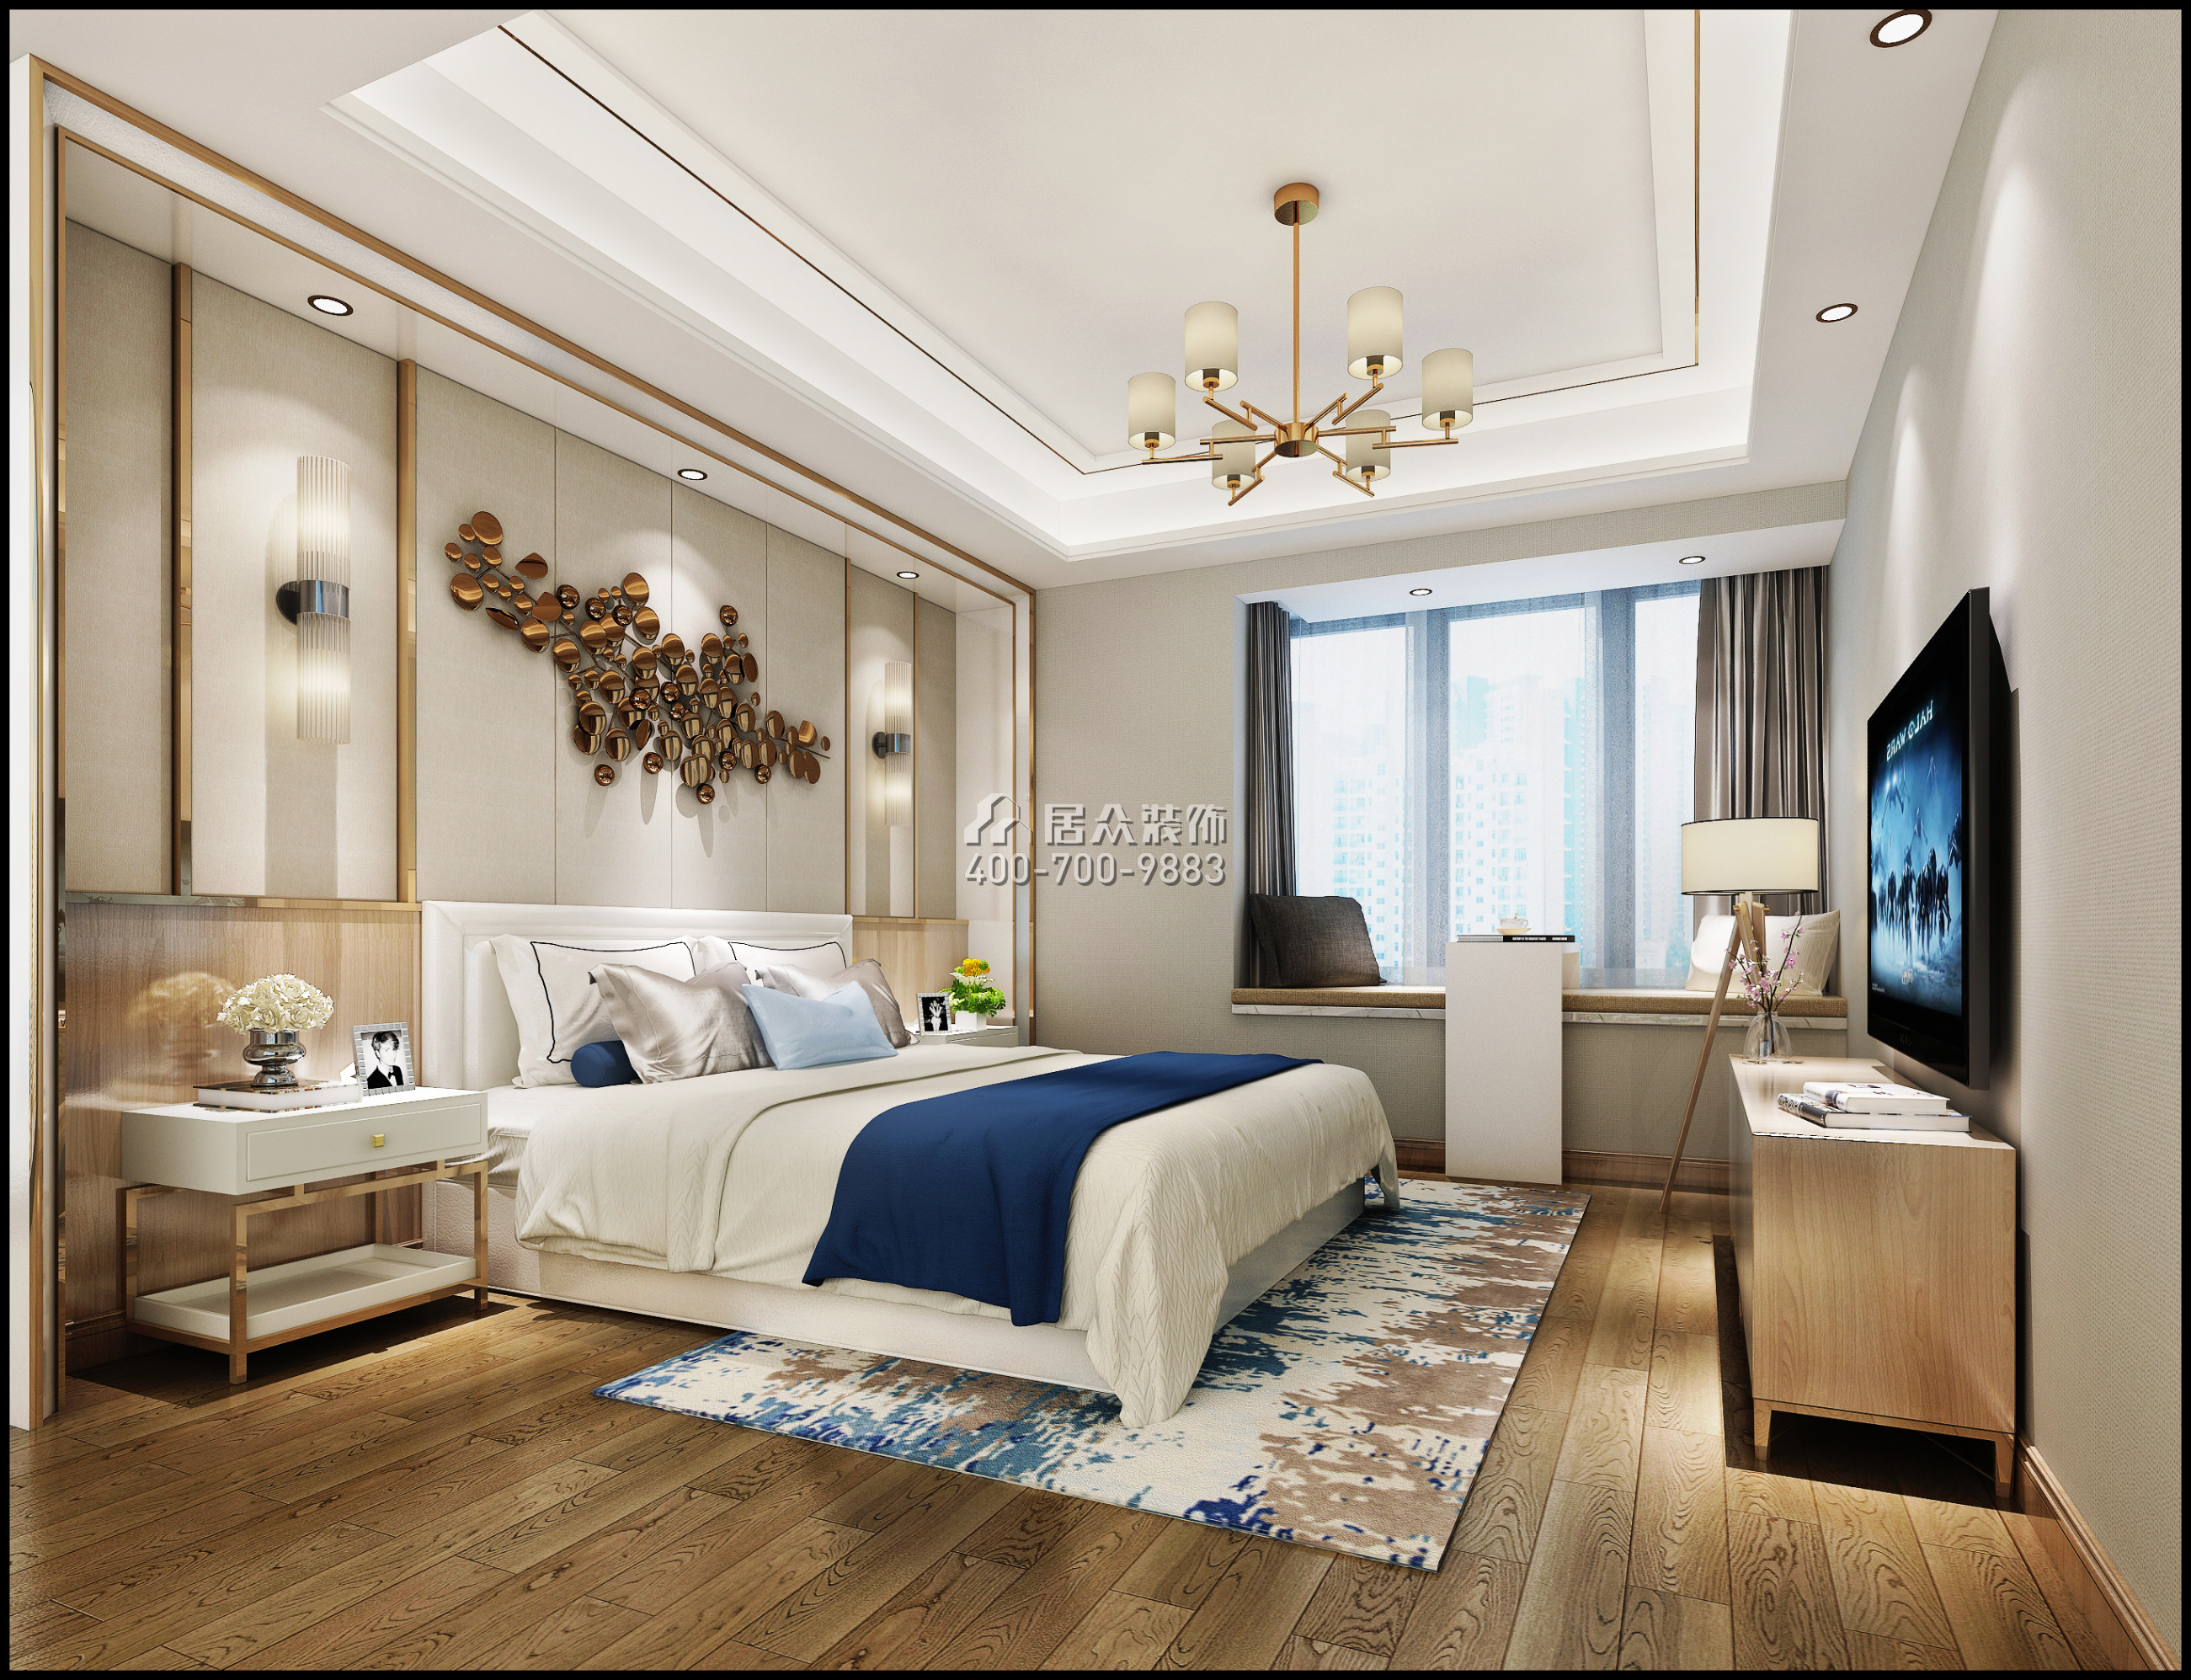 龙湖时代天街143平方米现代简约风格平层户型卧室装修效果图